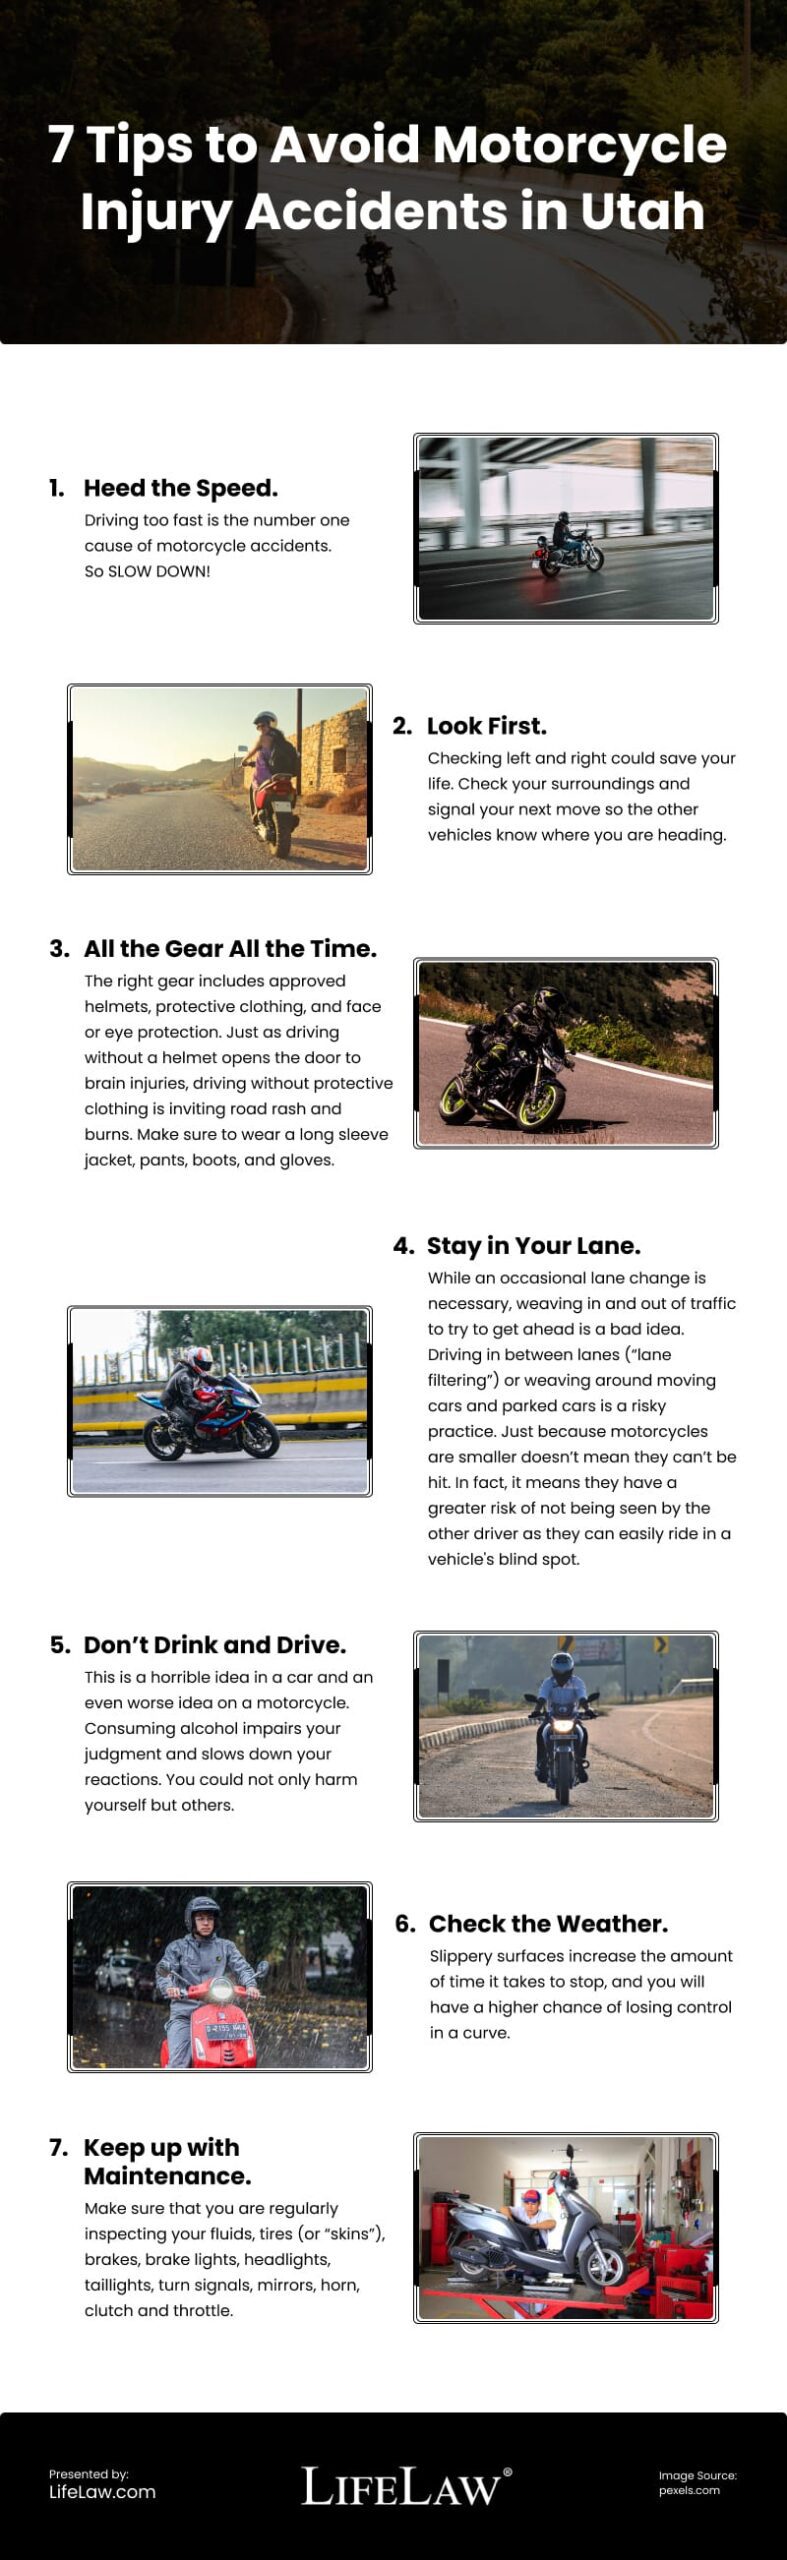 Infografía de 7 consejos para evitar accidentes con lesiones de motocicleta en Utah